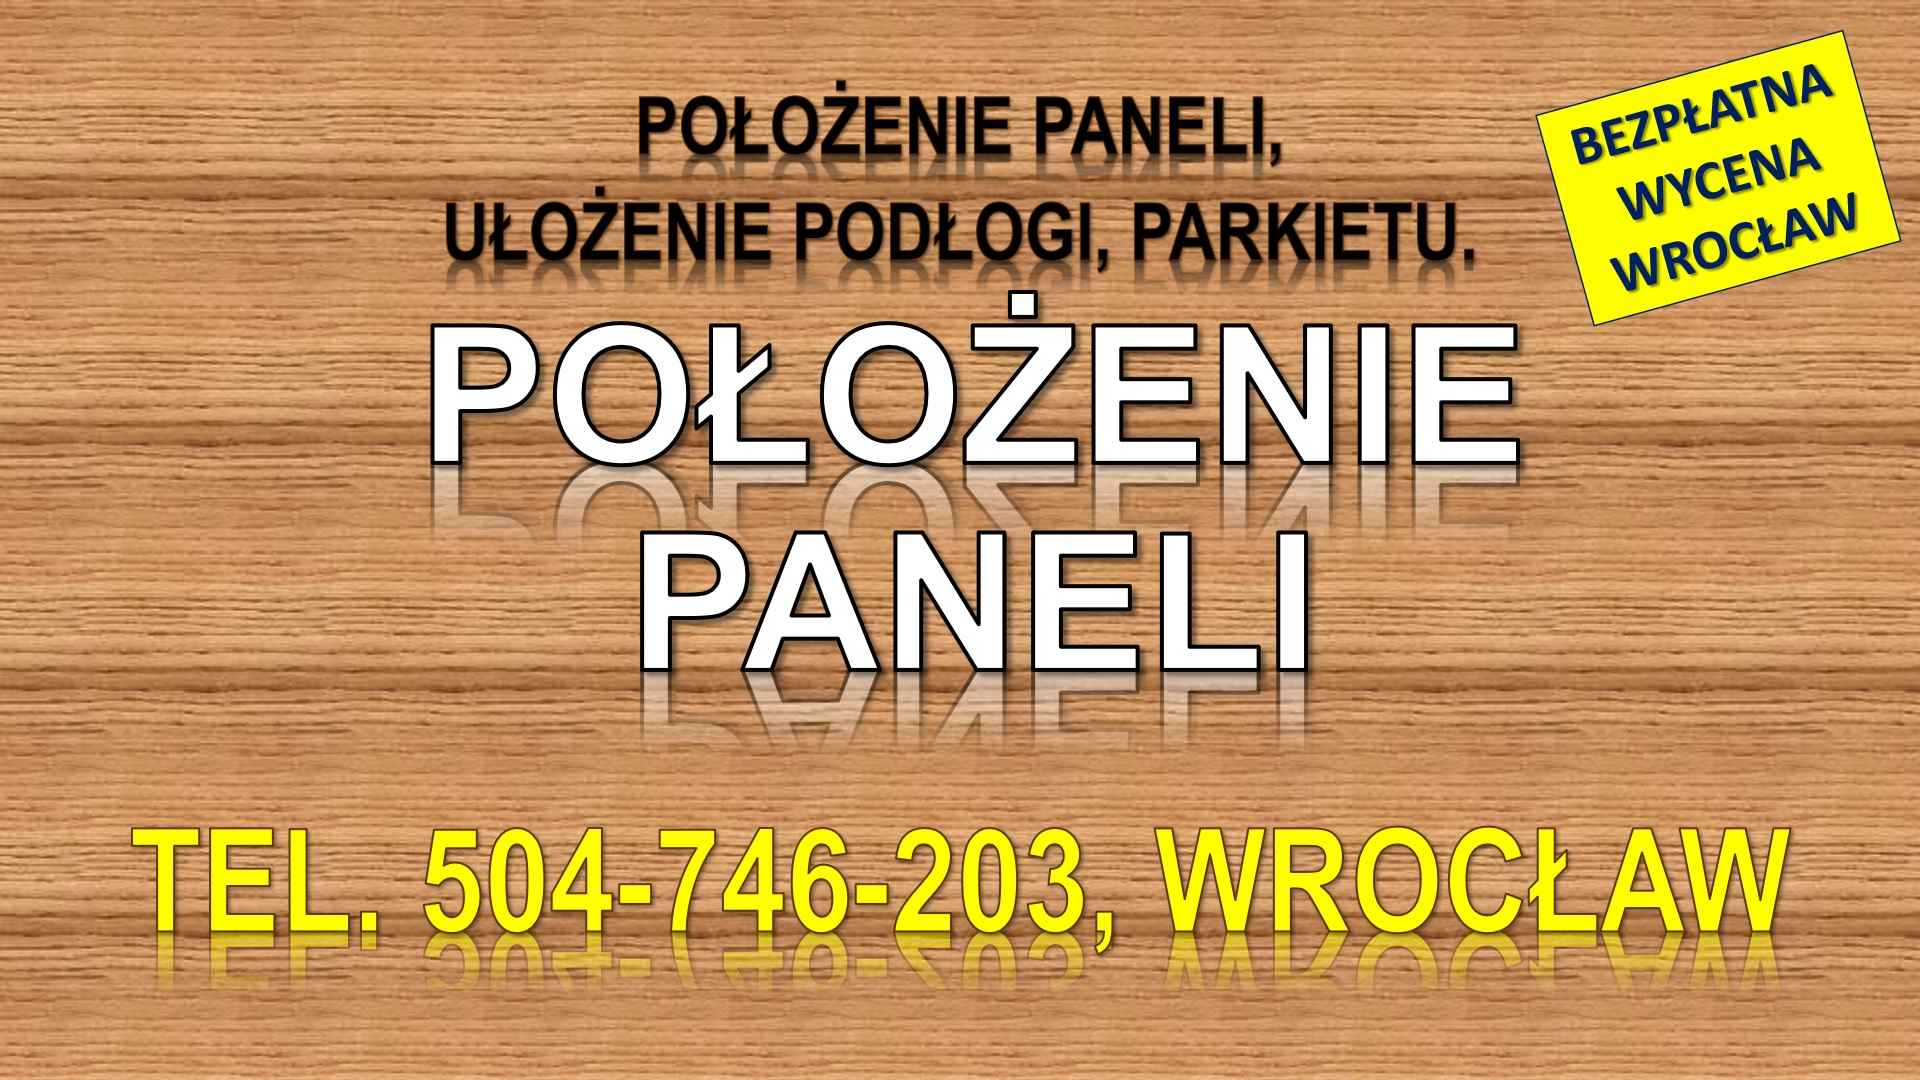 Położenie paneli, Wrocław, cena, tel. 504-746-203. Układanie, podłogi. Psie Pole - zdjęcie 1